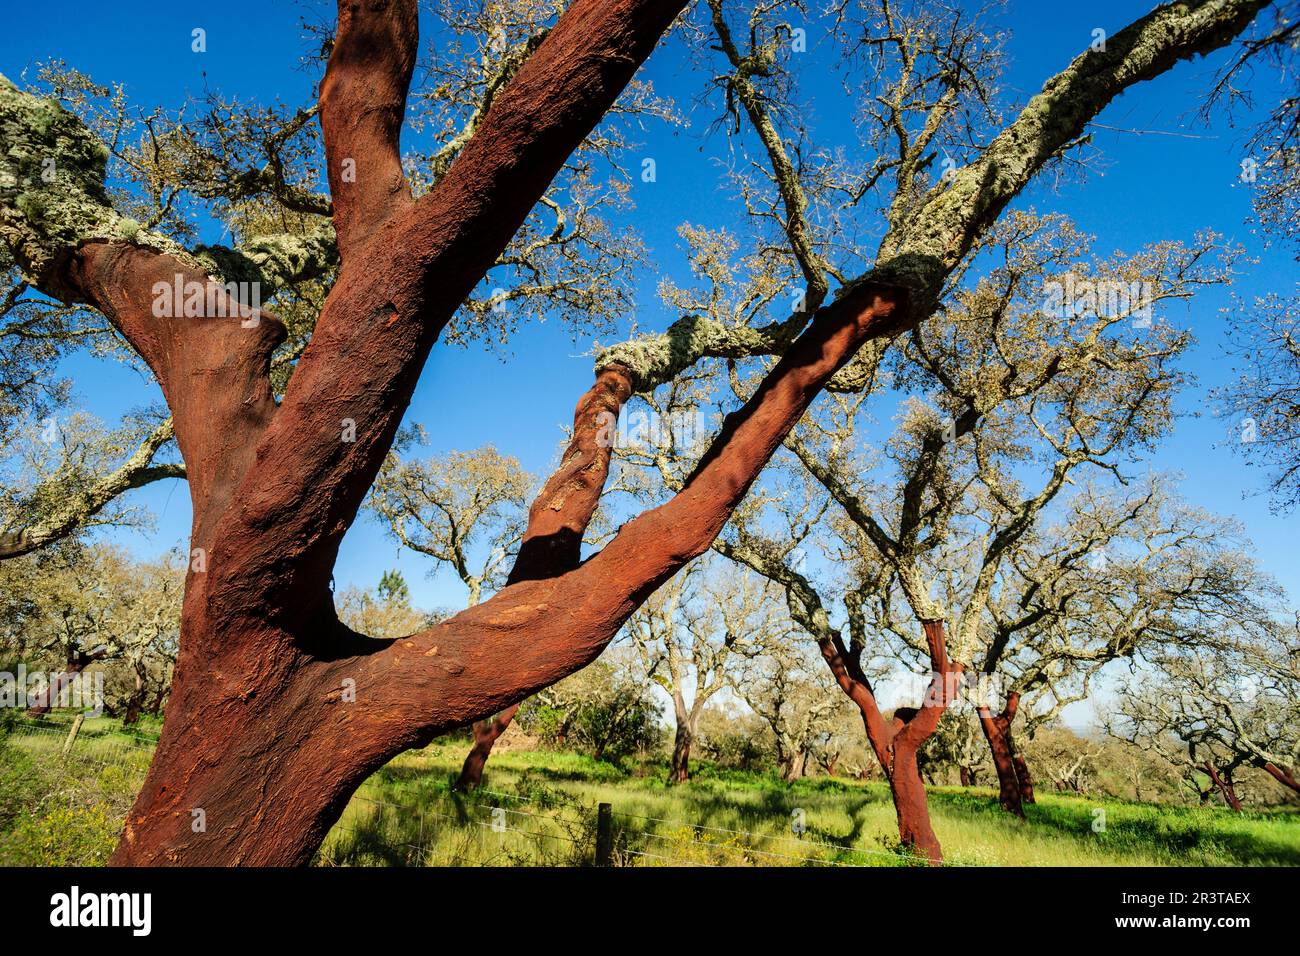 alcornoques descorchados,Quercus suber,Os Almendres, distrito de Evora, Alentejo, Portugal, europa. Stock Photo